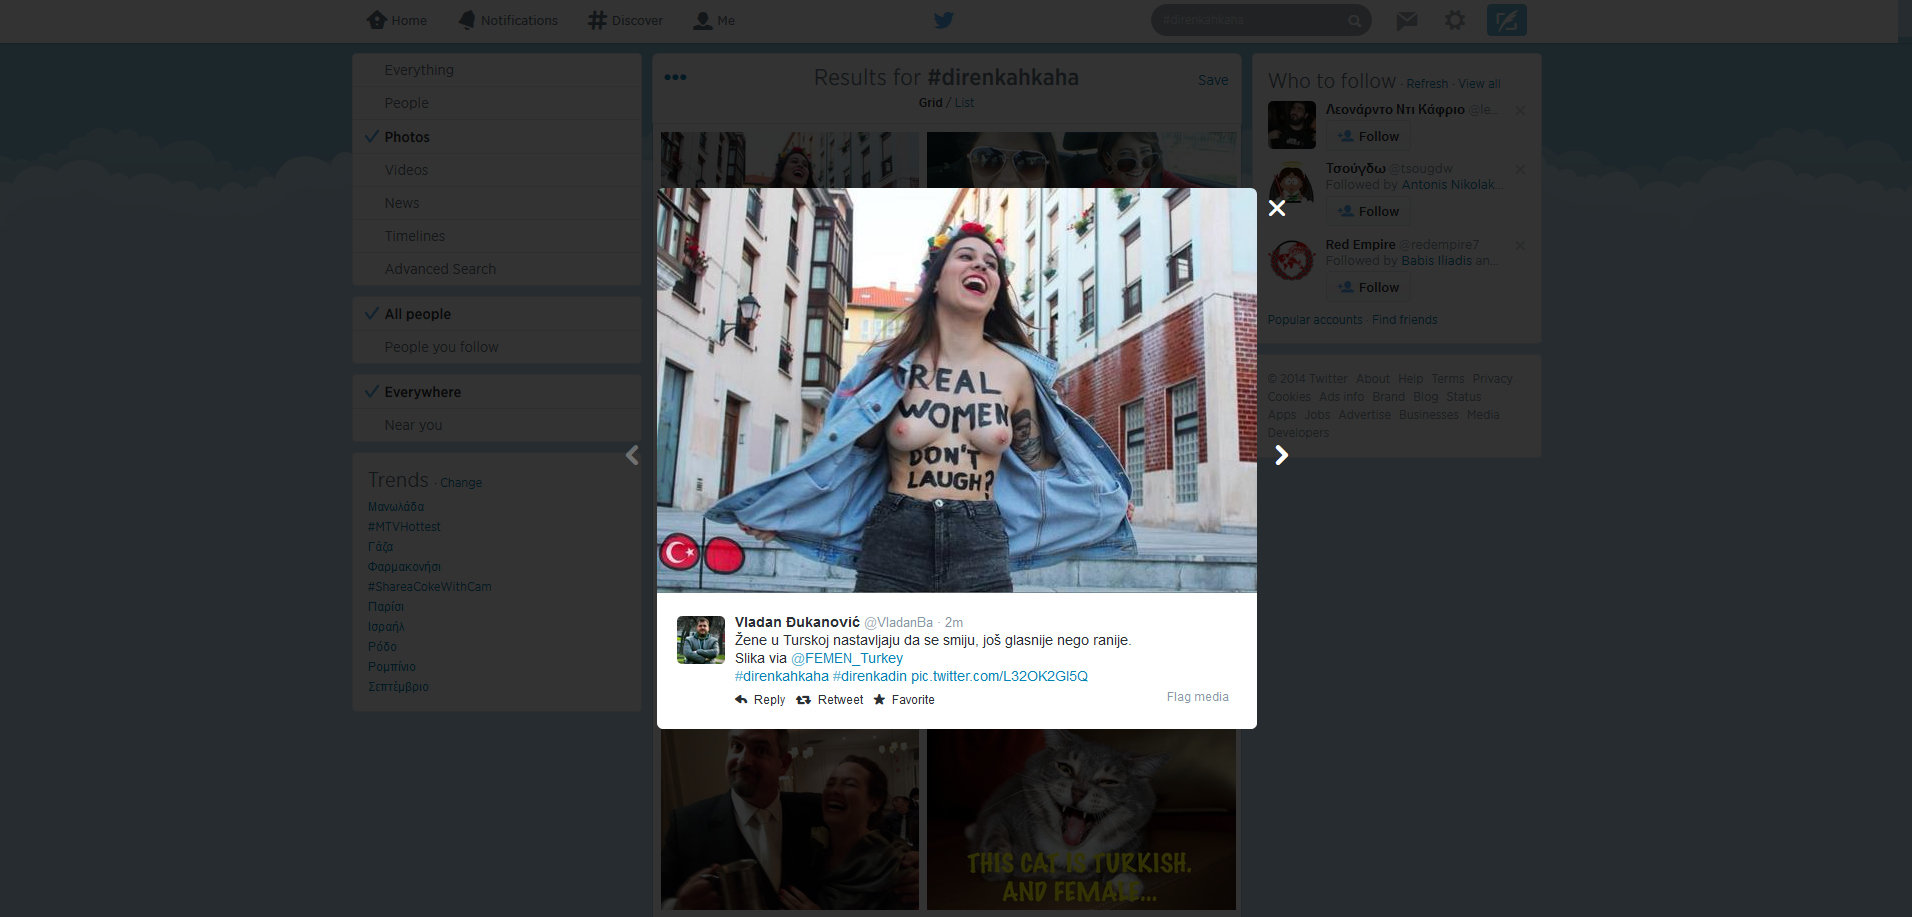 Αντεπίθεση στο Twitter: Οι γυναίκες στην Τουρκία απαντούν στην ηλιθιότητα του Άριντς με γέλιο. Με πολύ γέλιο (photos)